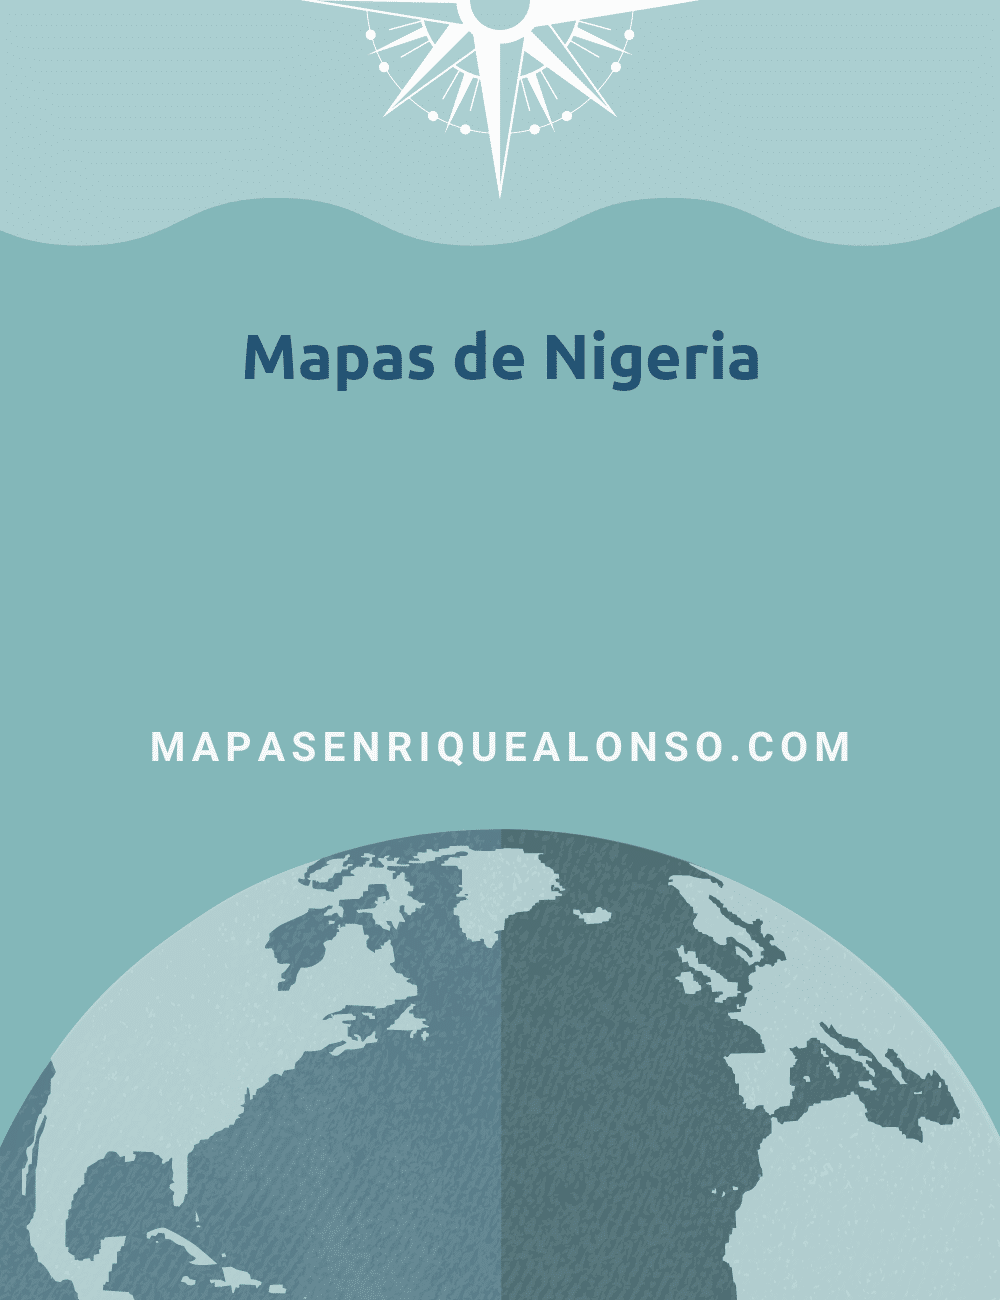 Mapas de Nigeria